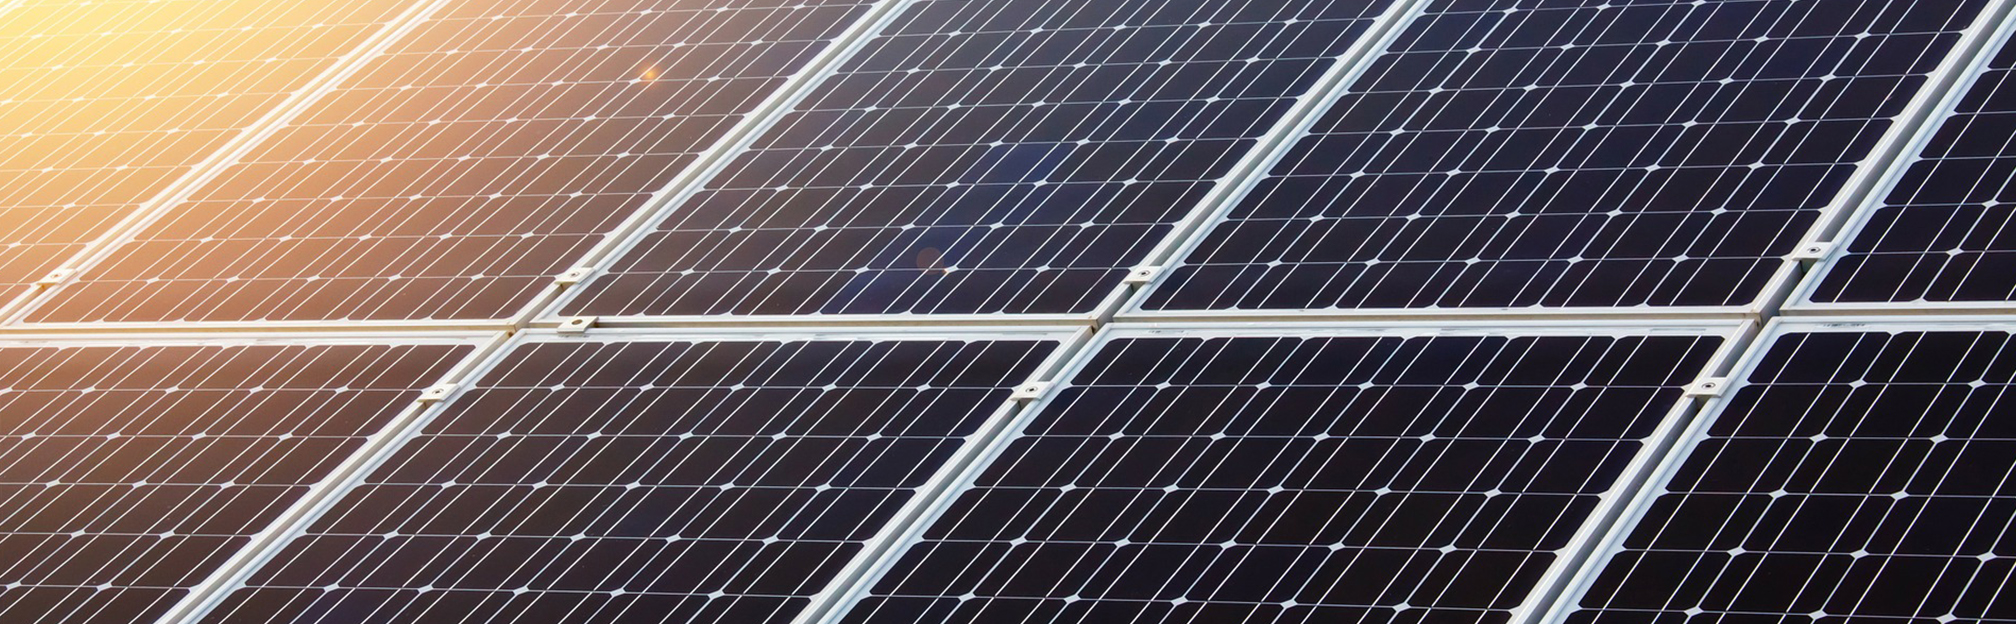 panneaux solaires photovoltaïques rennes a travers toit